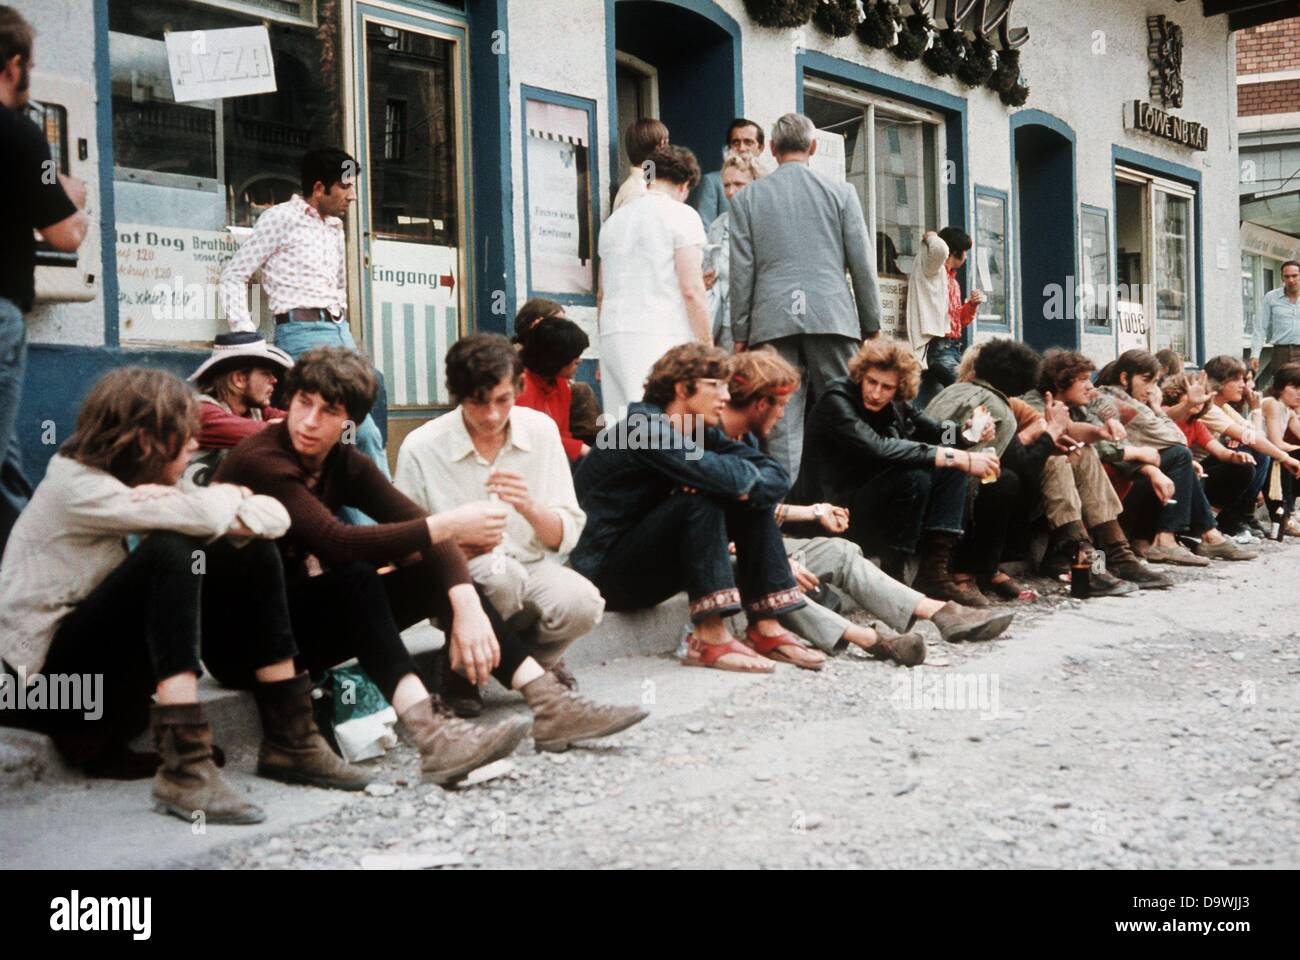 Les mocassins assis sur le trottoir en face de l'aire de pique-nique '', un lieu de rencontre populaire pour les mocassins et scène hippie dans la rue Léopold à Munich (photo de 1970). Banque D'Images